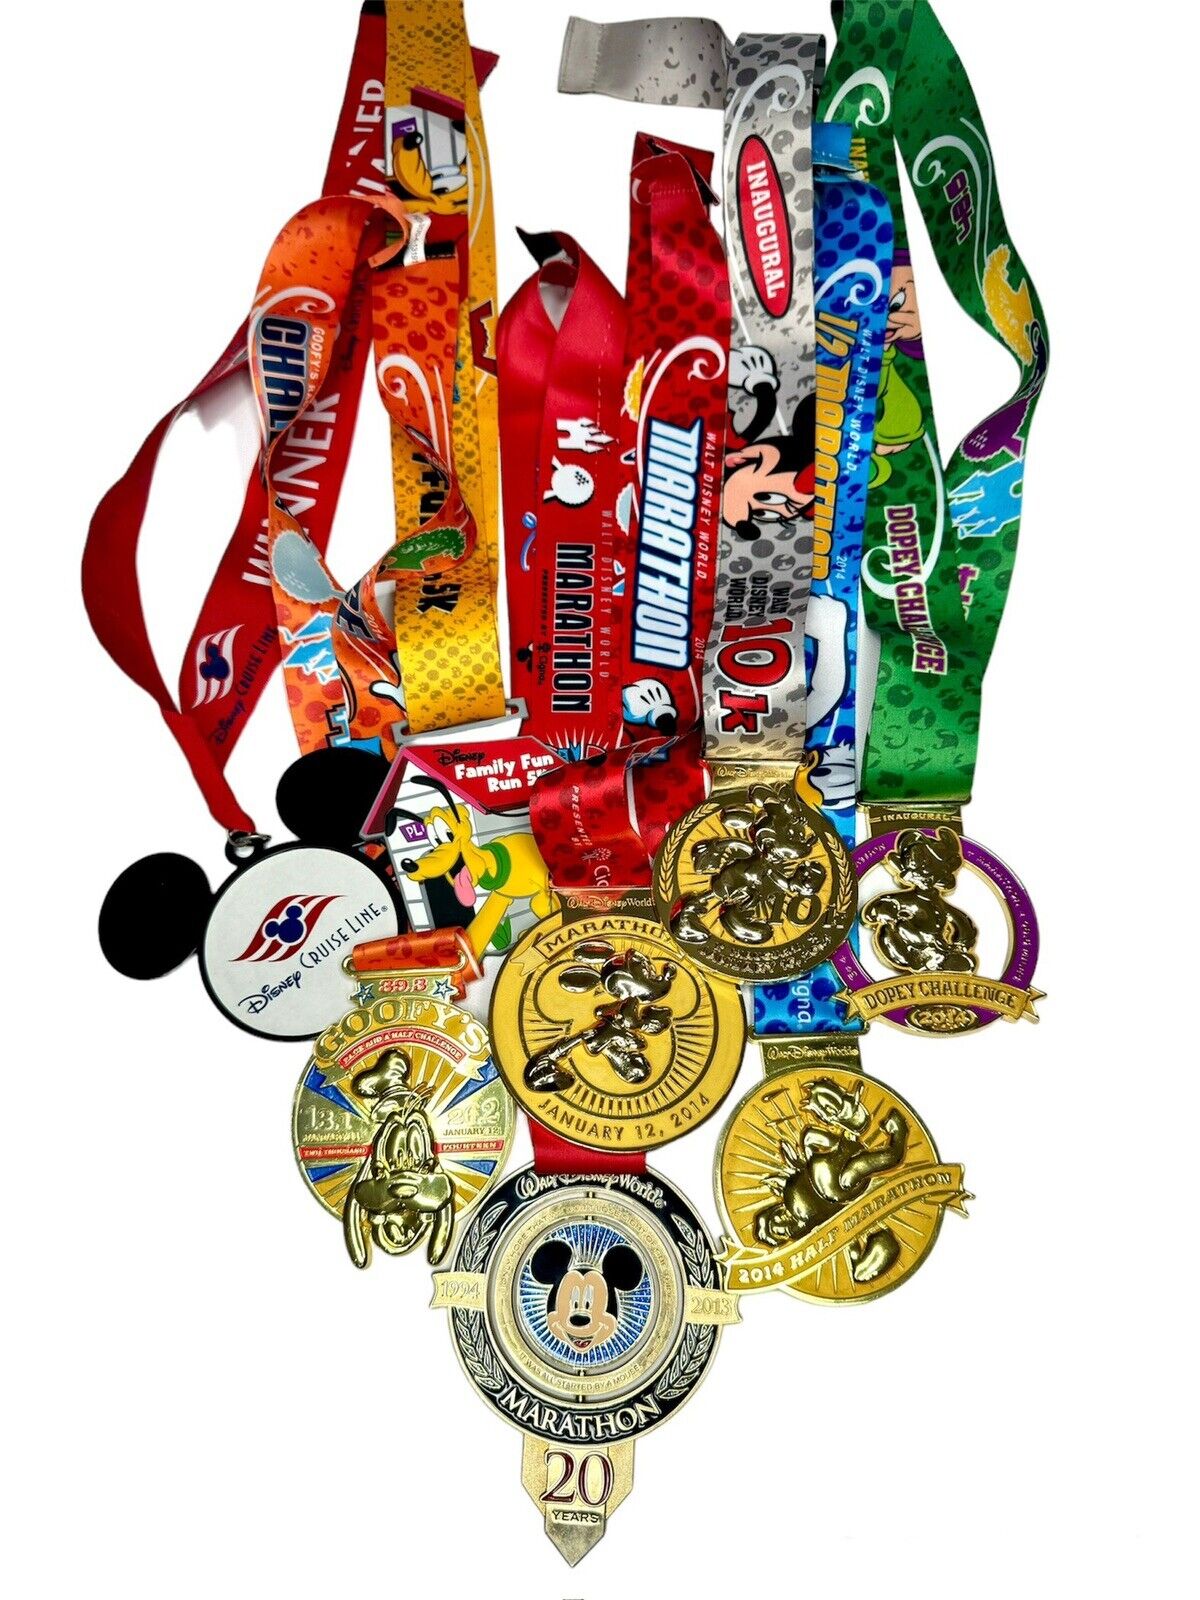 RunDisney Marathon Weekend Dopey Challenge Medals 2014 Inaugural Year Spinner